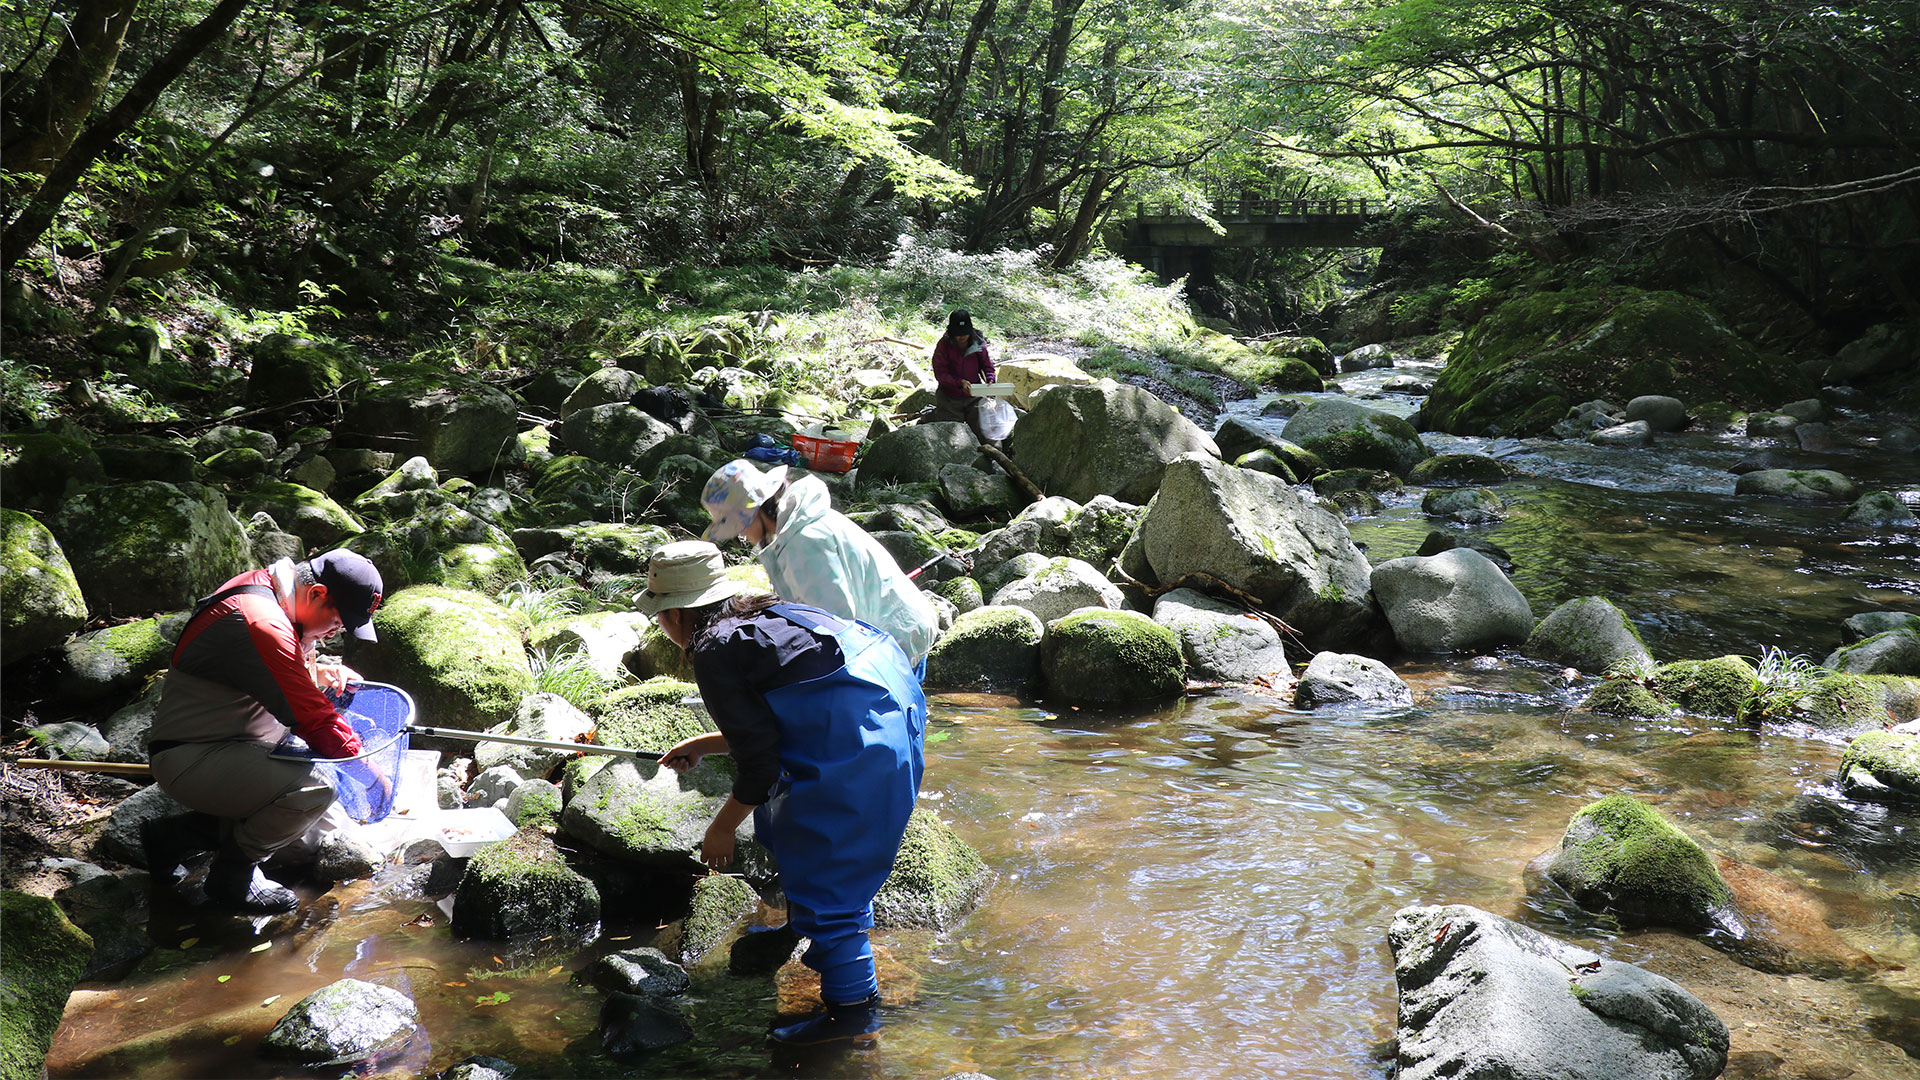 太田川上流域における底生動物を採取している写真